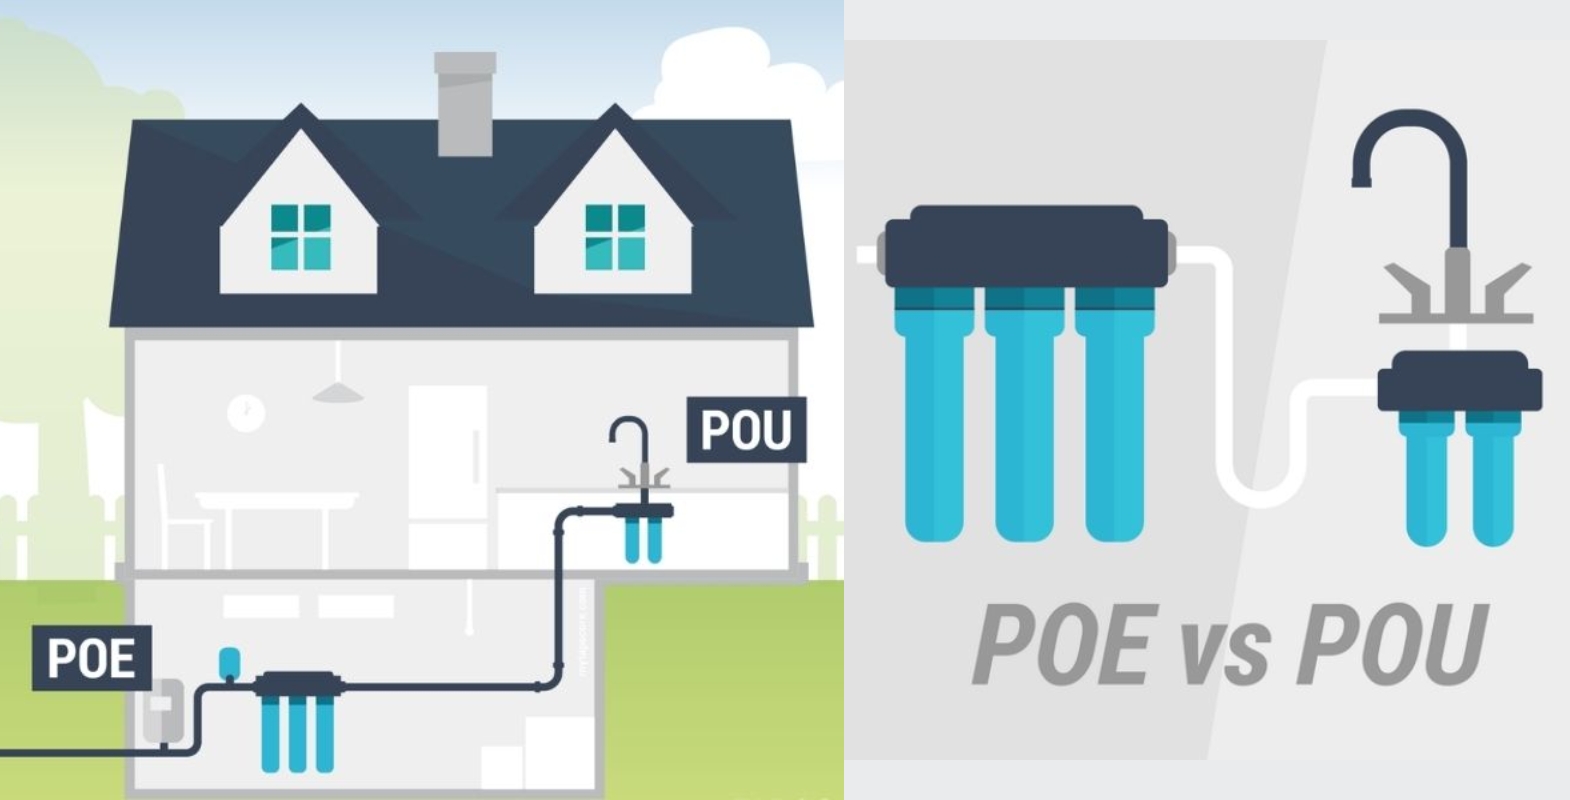 Eksempel på vannfilter installasjon POU/POE